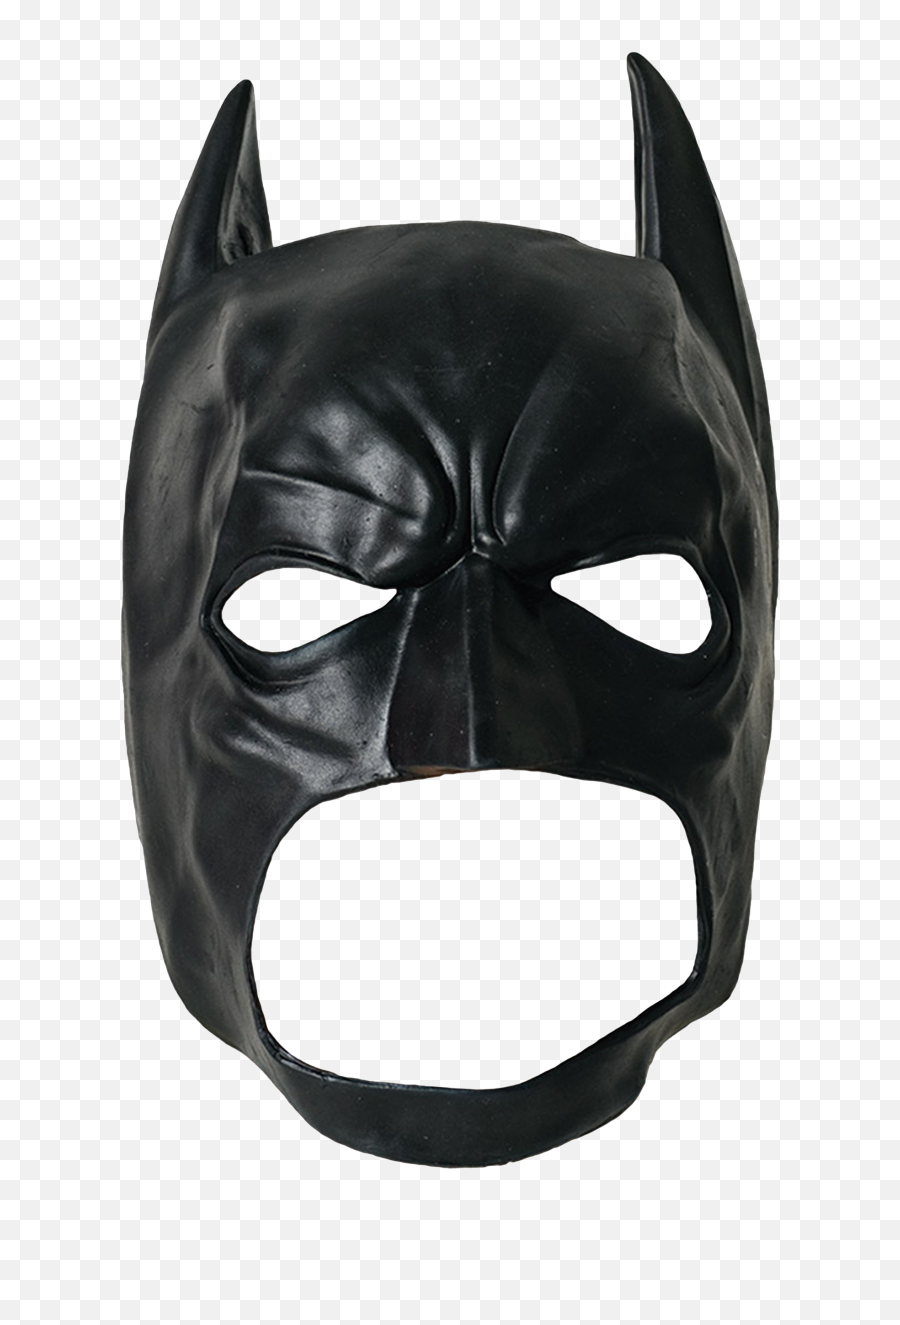 Download Transparent Background Batman Mask Png - Dark Knight Mask Png,Batman Transparent Background